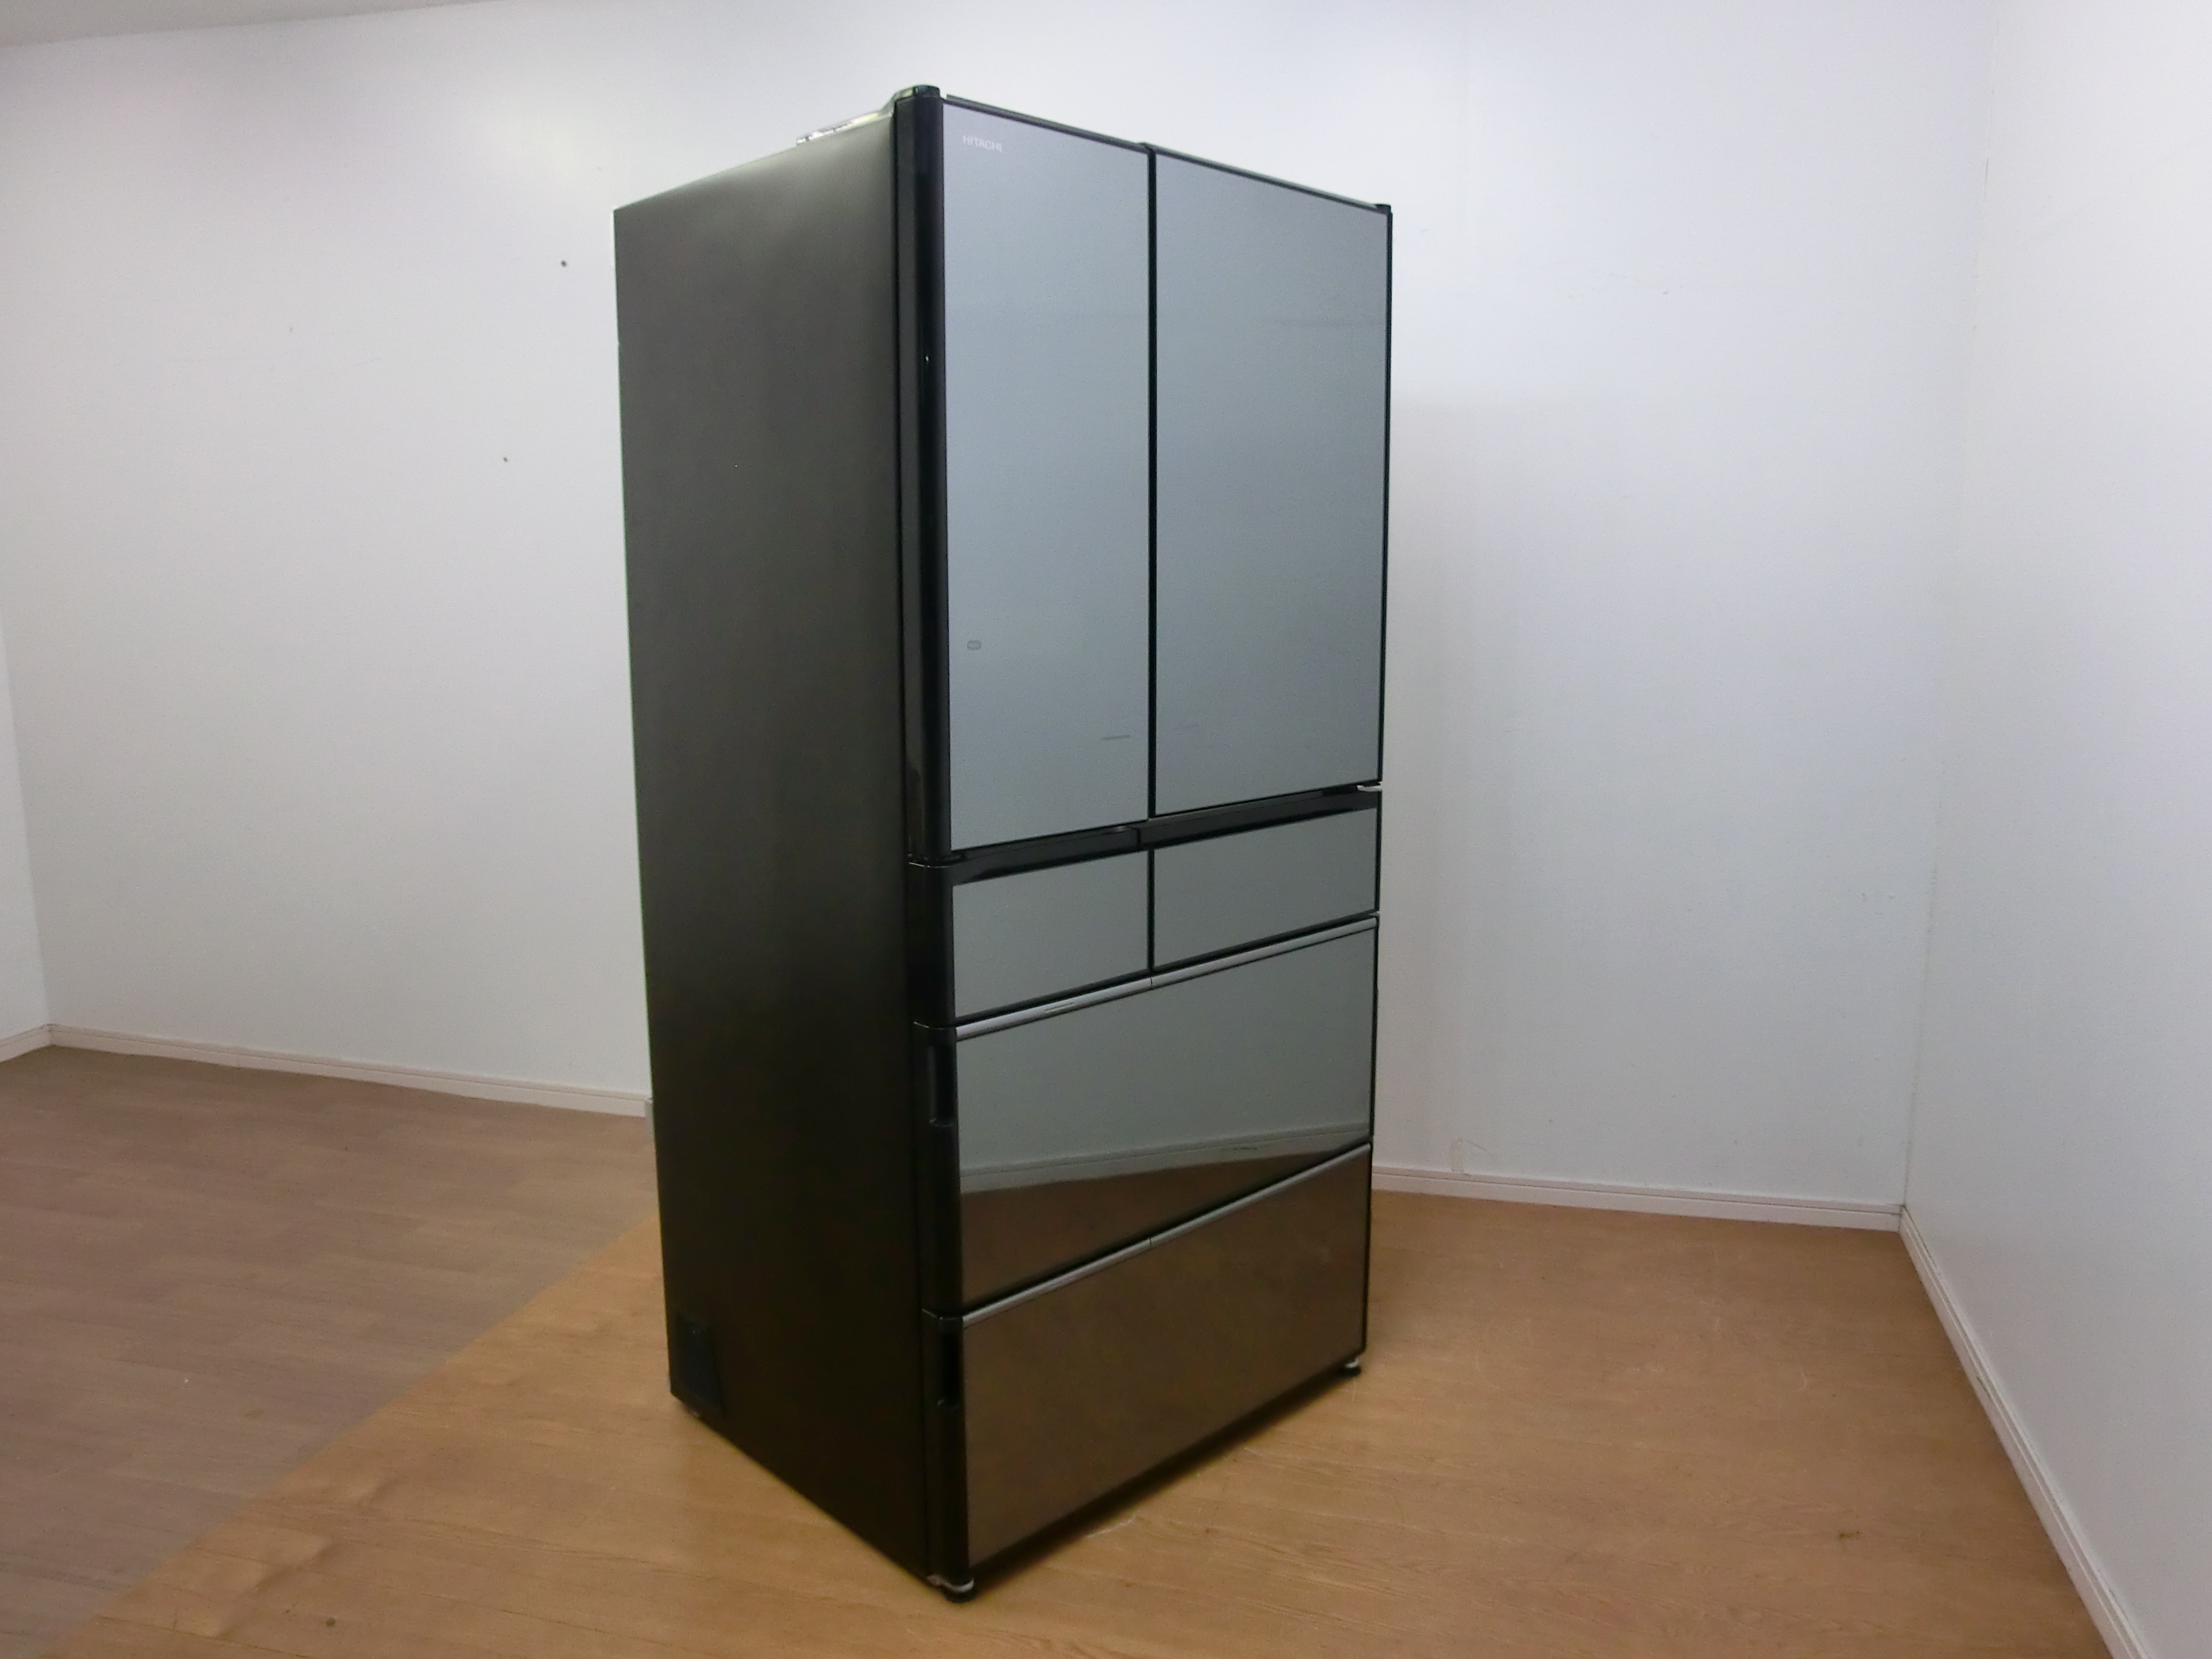 HITACHI(日立) 730L 冷凍冷蔵庫(R-X7300F) “真空チルド” 買取しました 